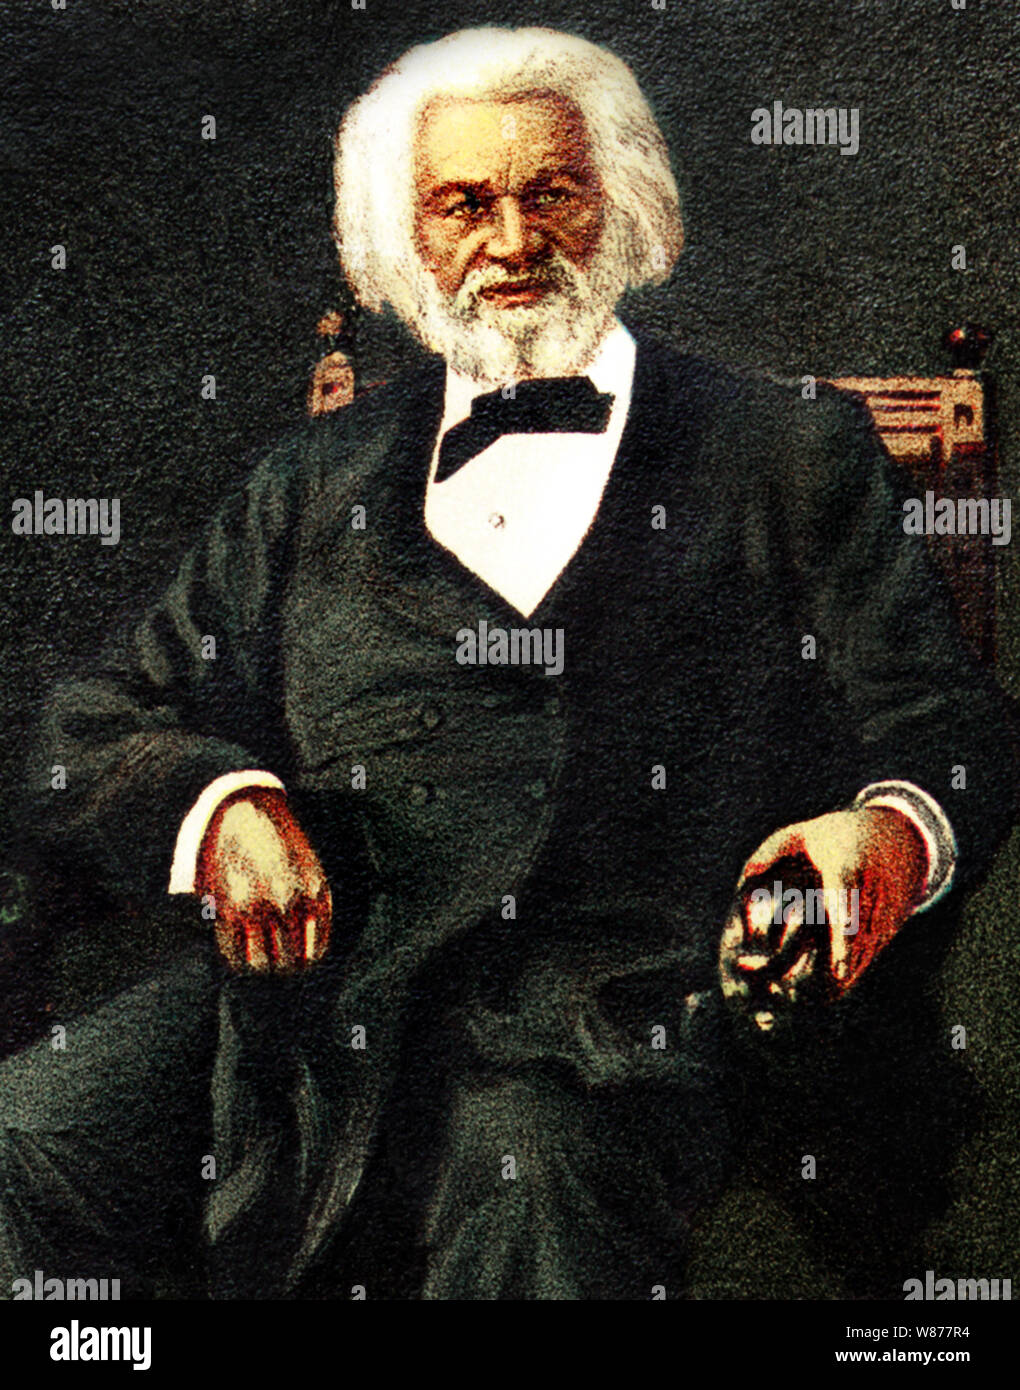 Vintage Farbe Porträt der amerikanischen Sozialreformer, Wahrheit, Redner, Schriftsteller und Staatsmann Frederick Douglass (Frederick Augustus Washington Bailey geboren) (c 1818 - 1895). Stockfoto